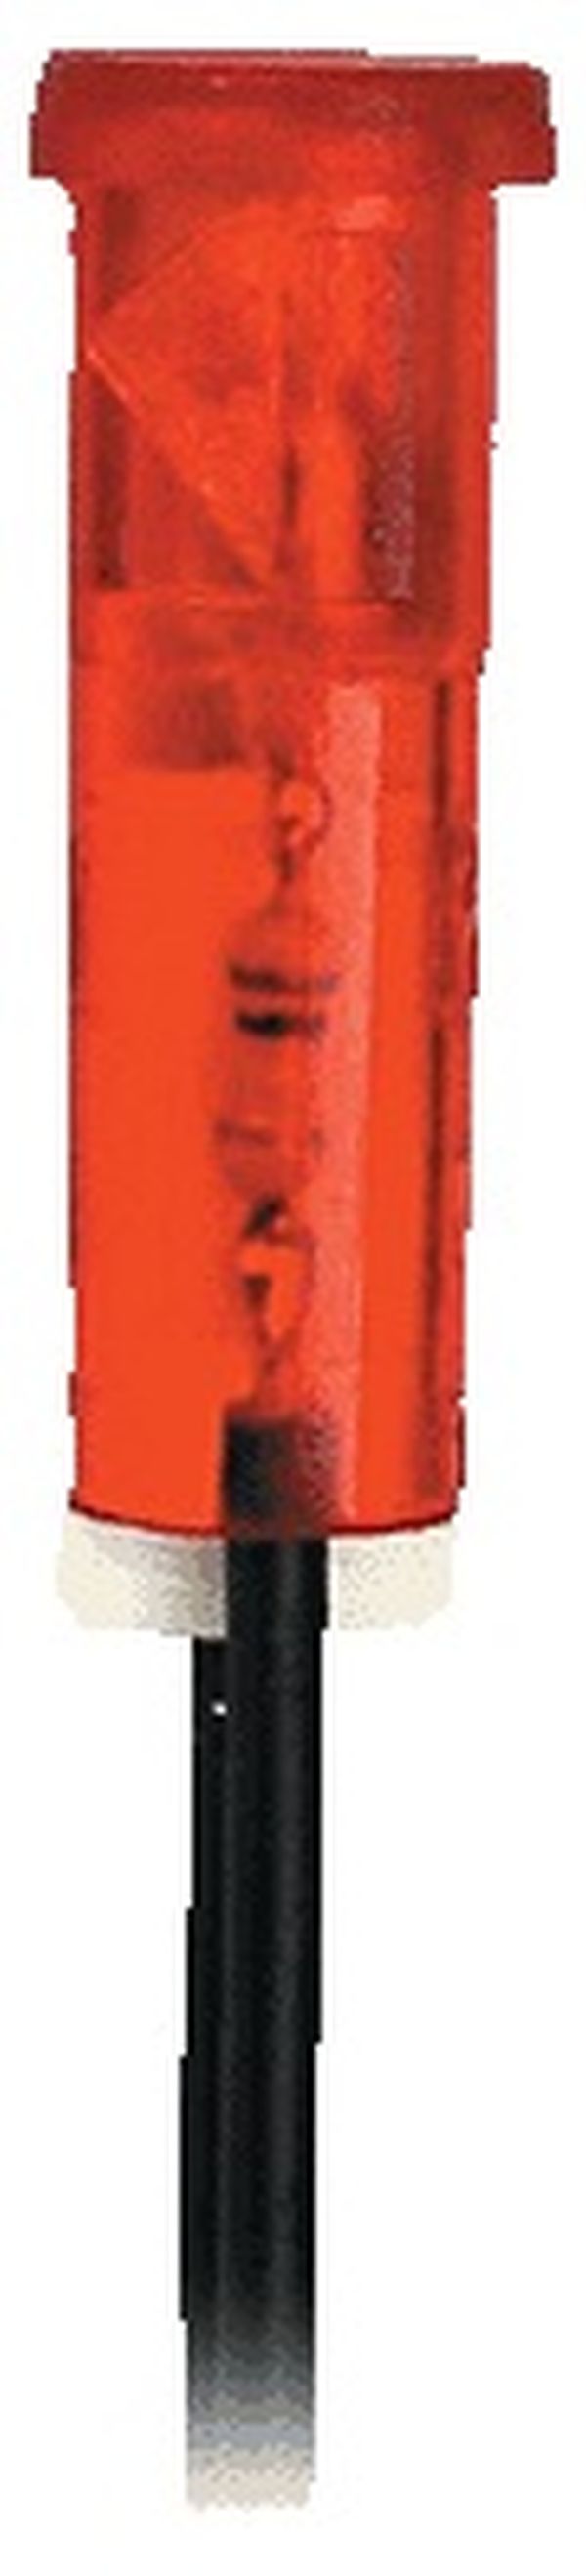 PHILIPPI - Signalleuchte 230V/50Hz rot, 9mm